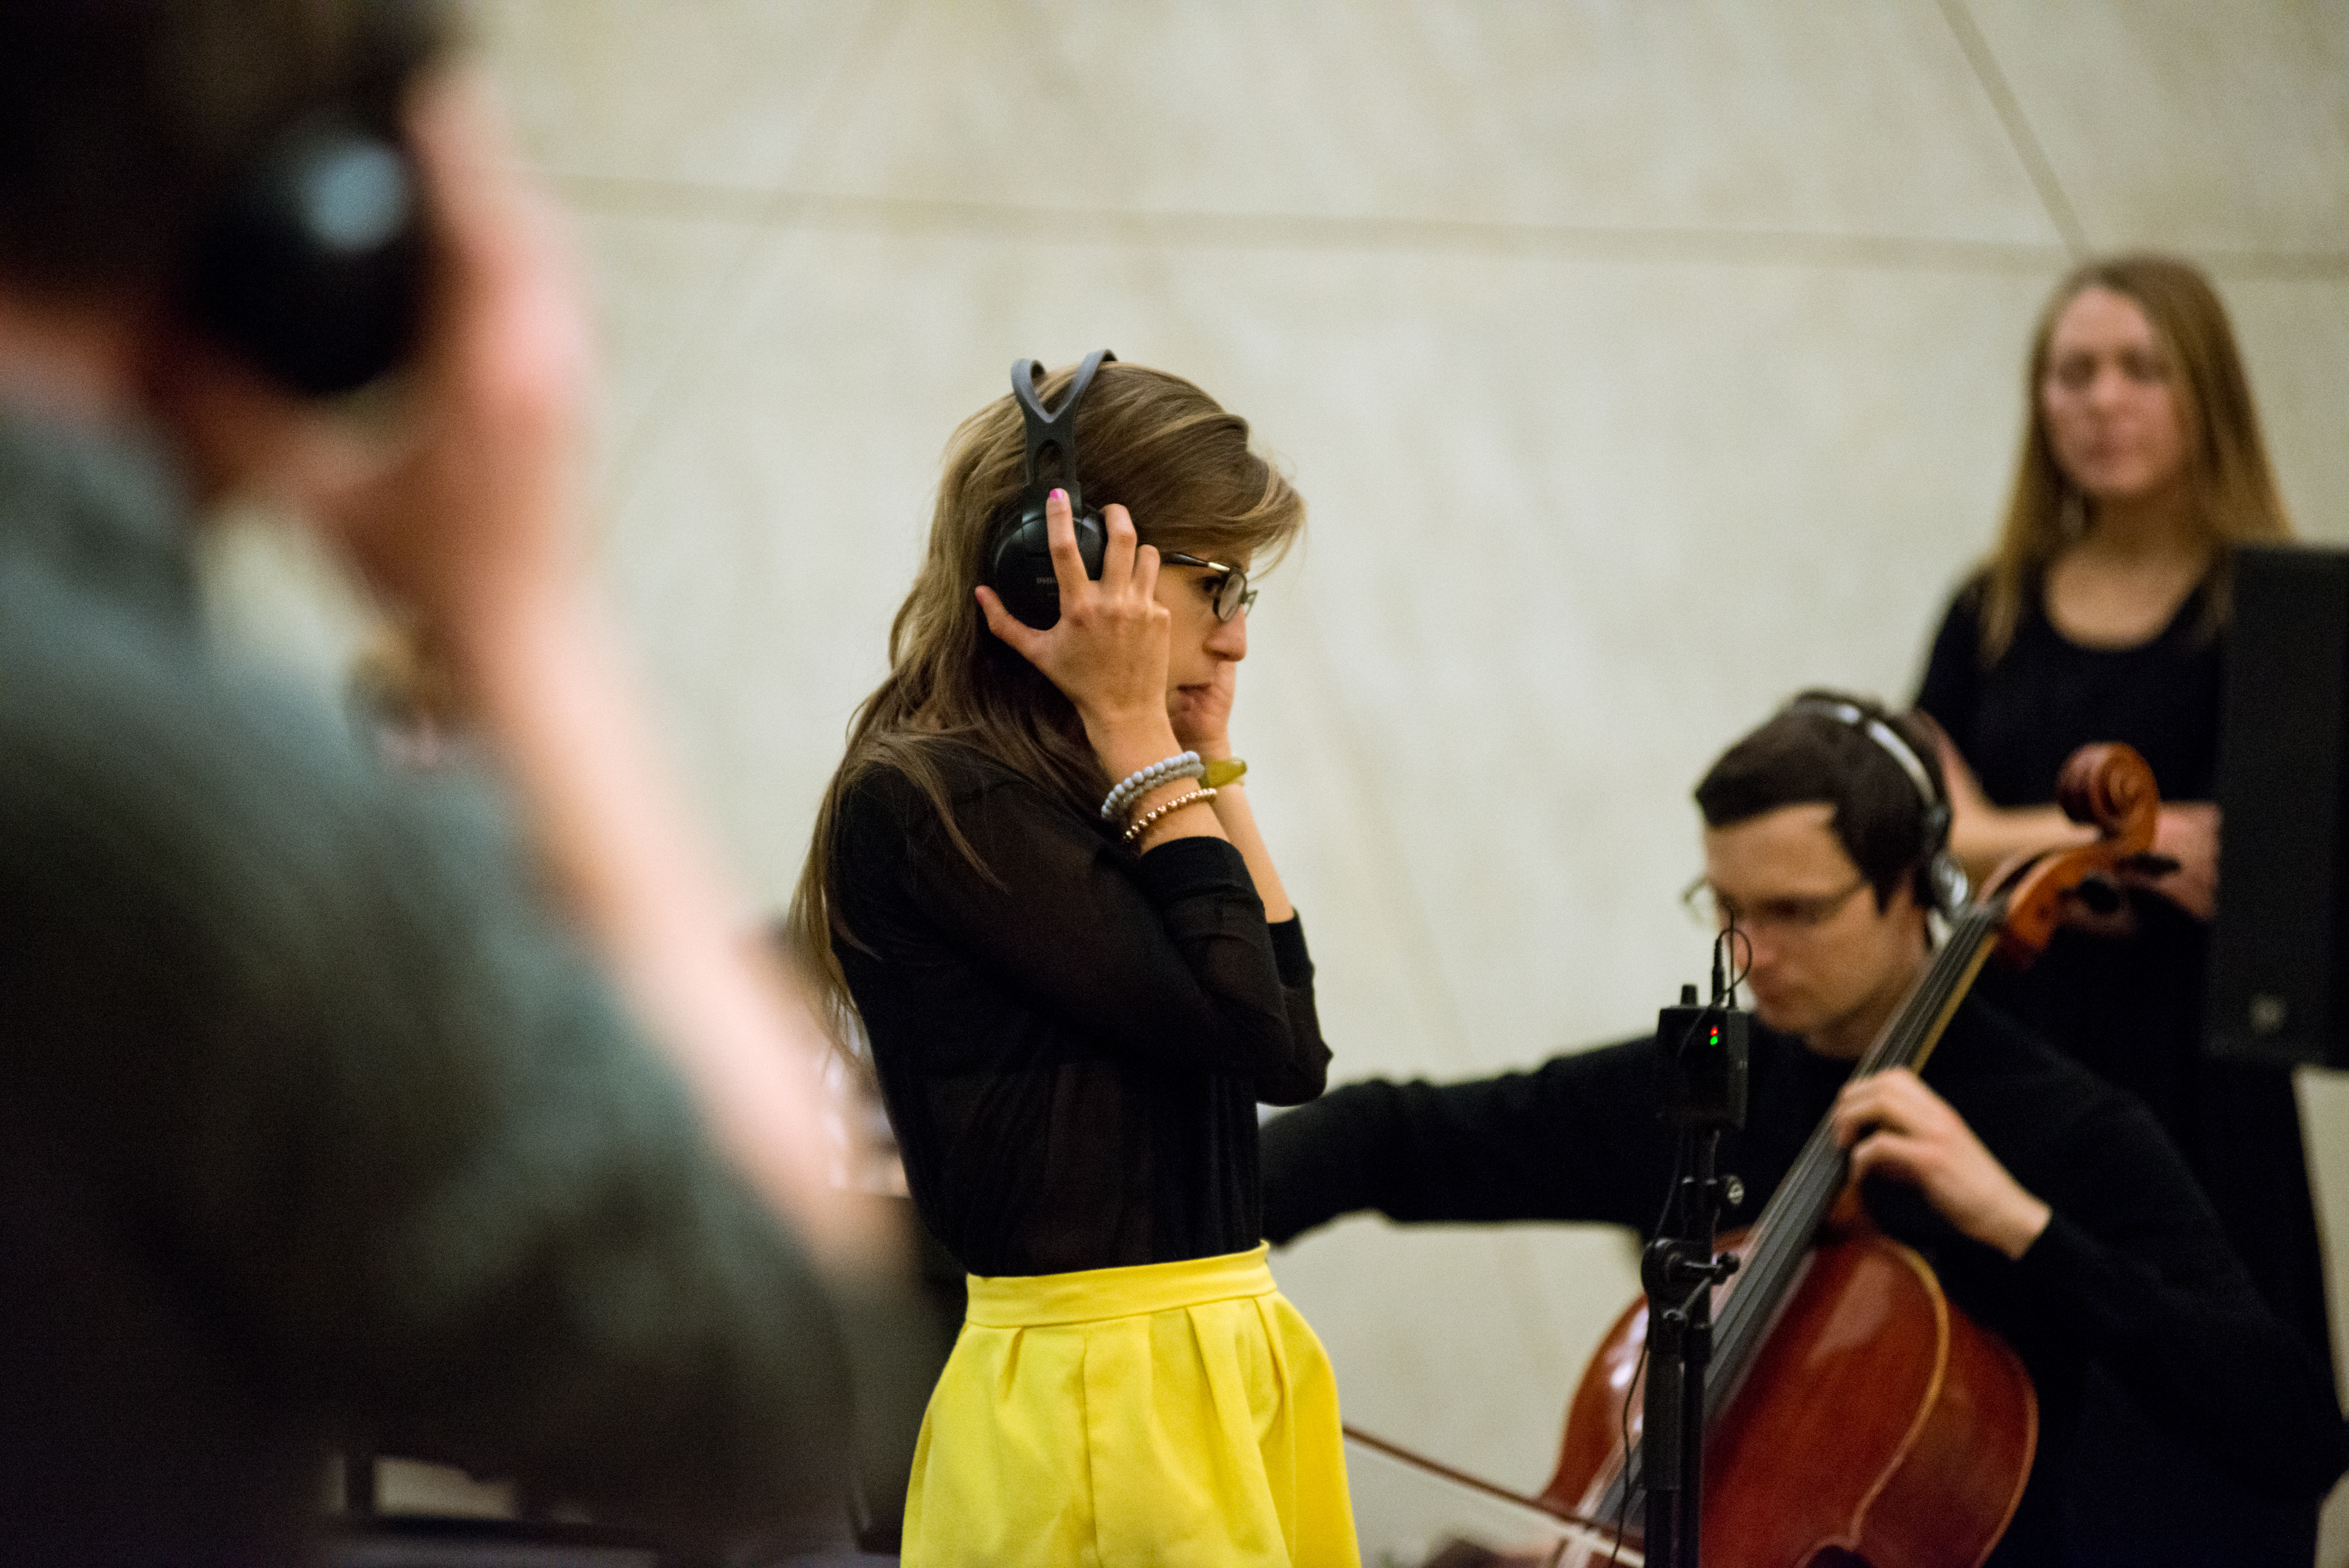 Lukas Ligeti, wykonanie utworu z wykorzystaniem słuchawek, poprzez które kompozytor„dyrygował” zespołem muzyków, ustalając zakres i charakter improwizacji, fot. Bartosz Górka